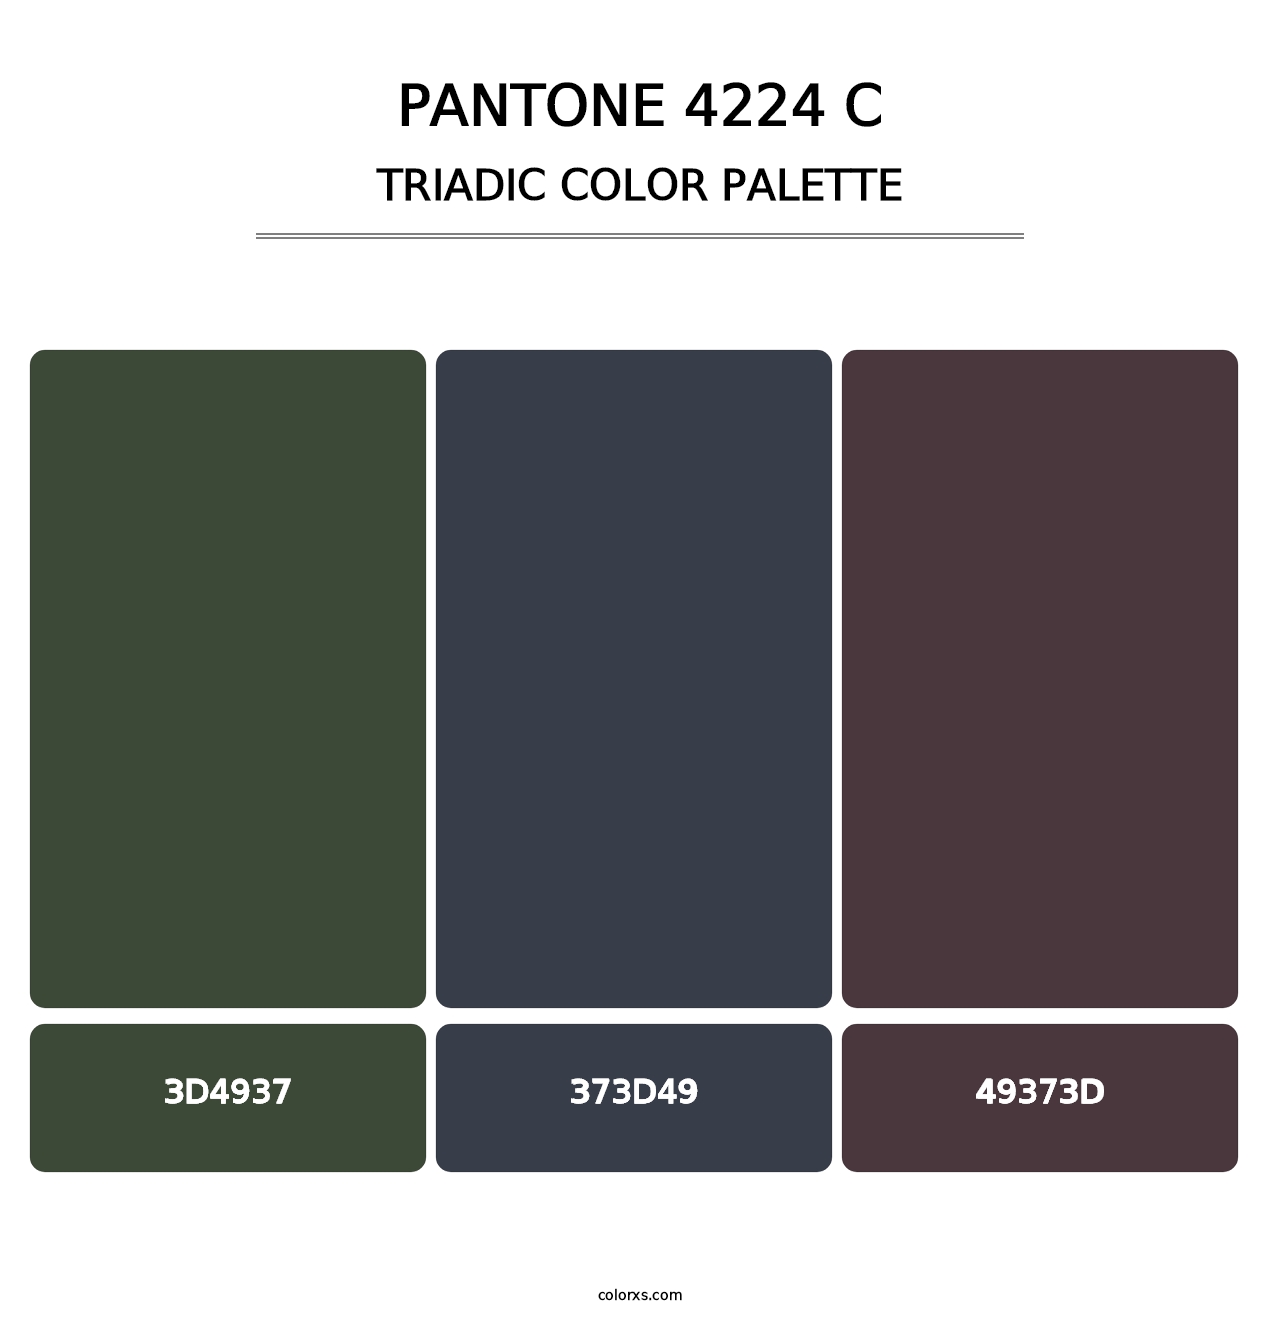 PANTONE 4224 C - Triadic Color Palette